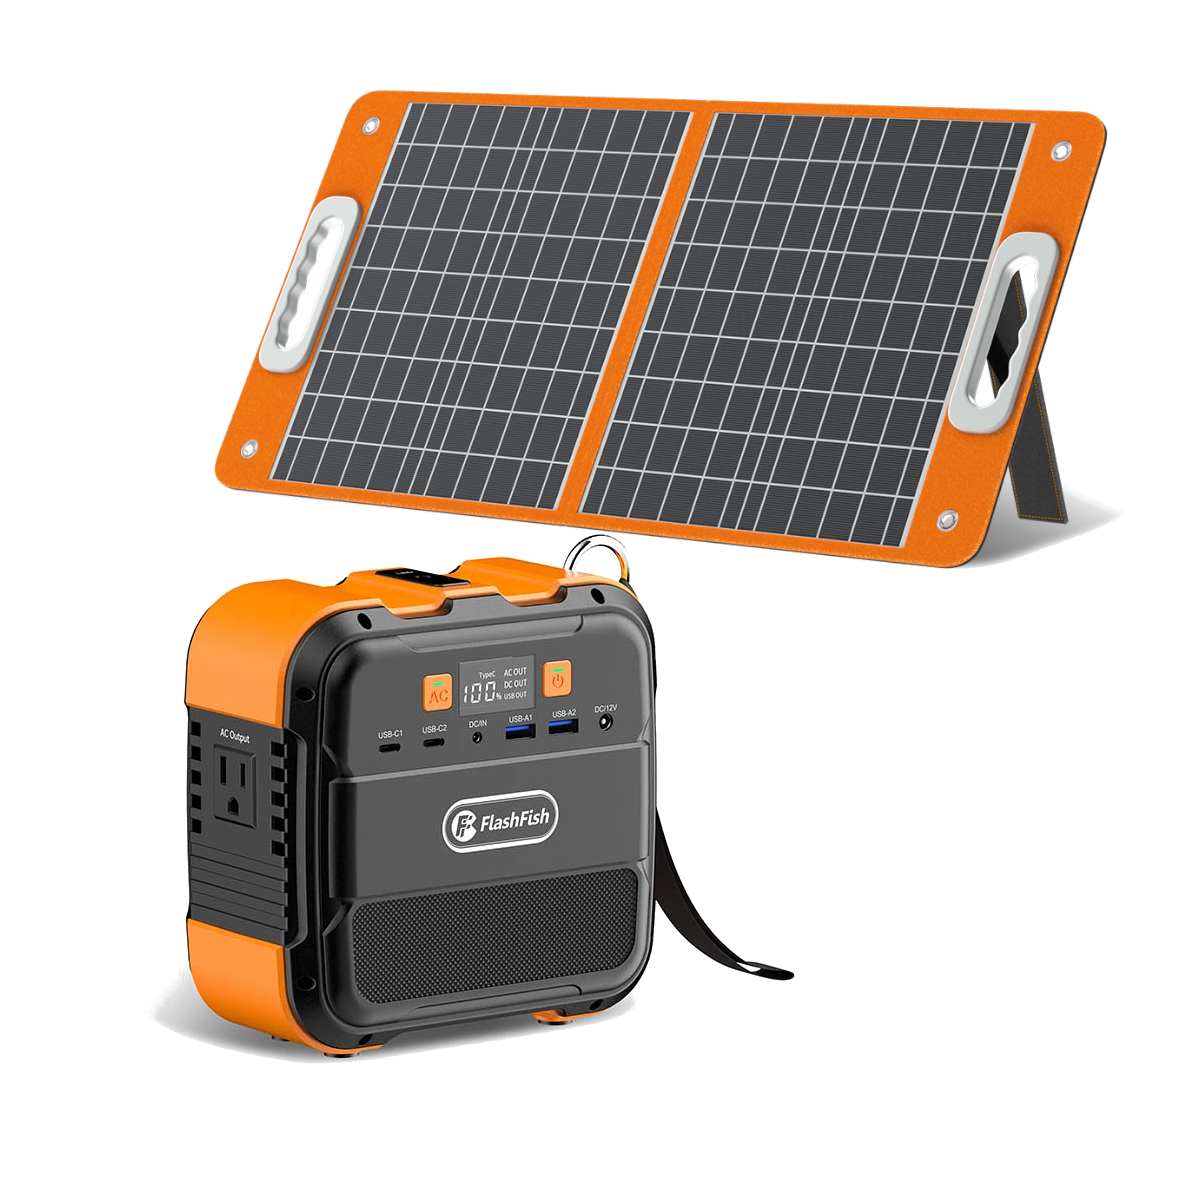 [EU Direct] Centrale elettrica portatile FlashFish A101 da 120W 96Wh 26400mAh con 1 pannello solare pieghevole da 18V 60W, Generatore di corrente alternativa di backup, Batteria portatile di alimentazione, Batteria al litio per campeggio, Viaggi